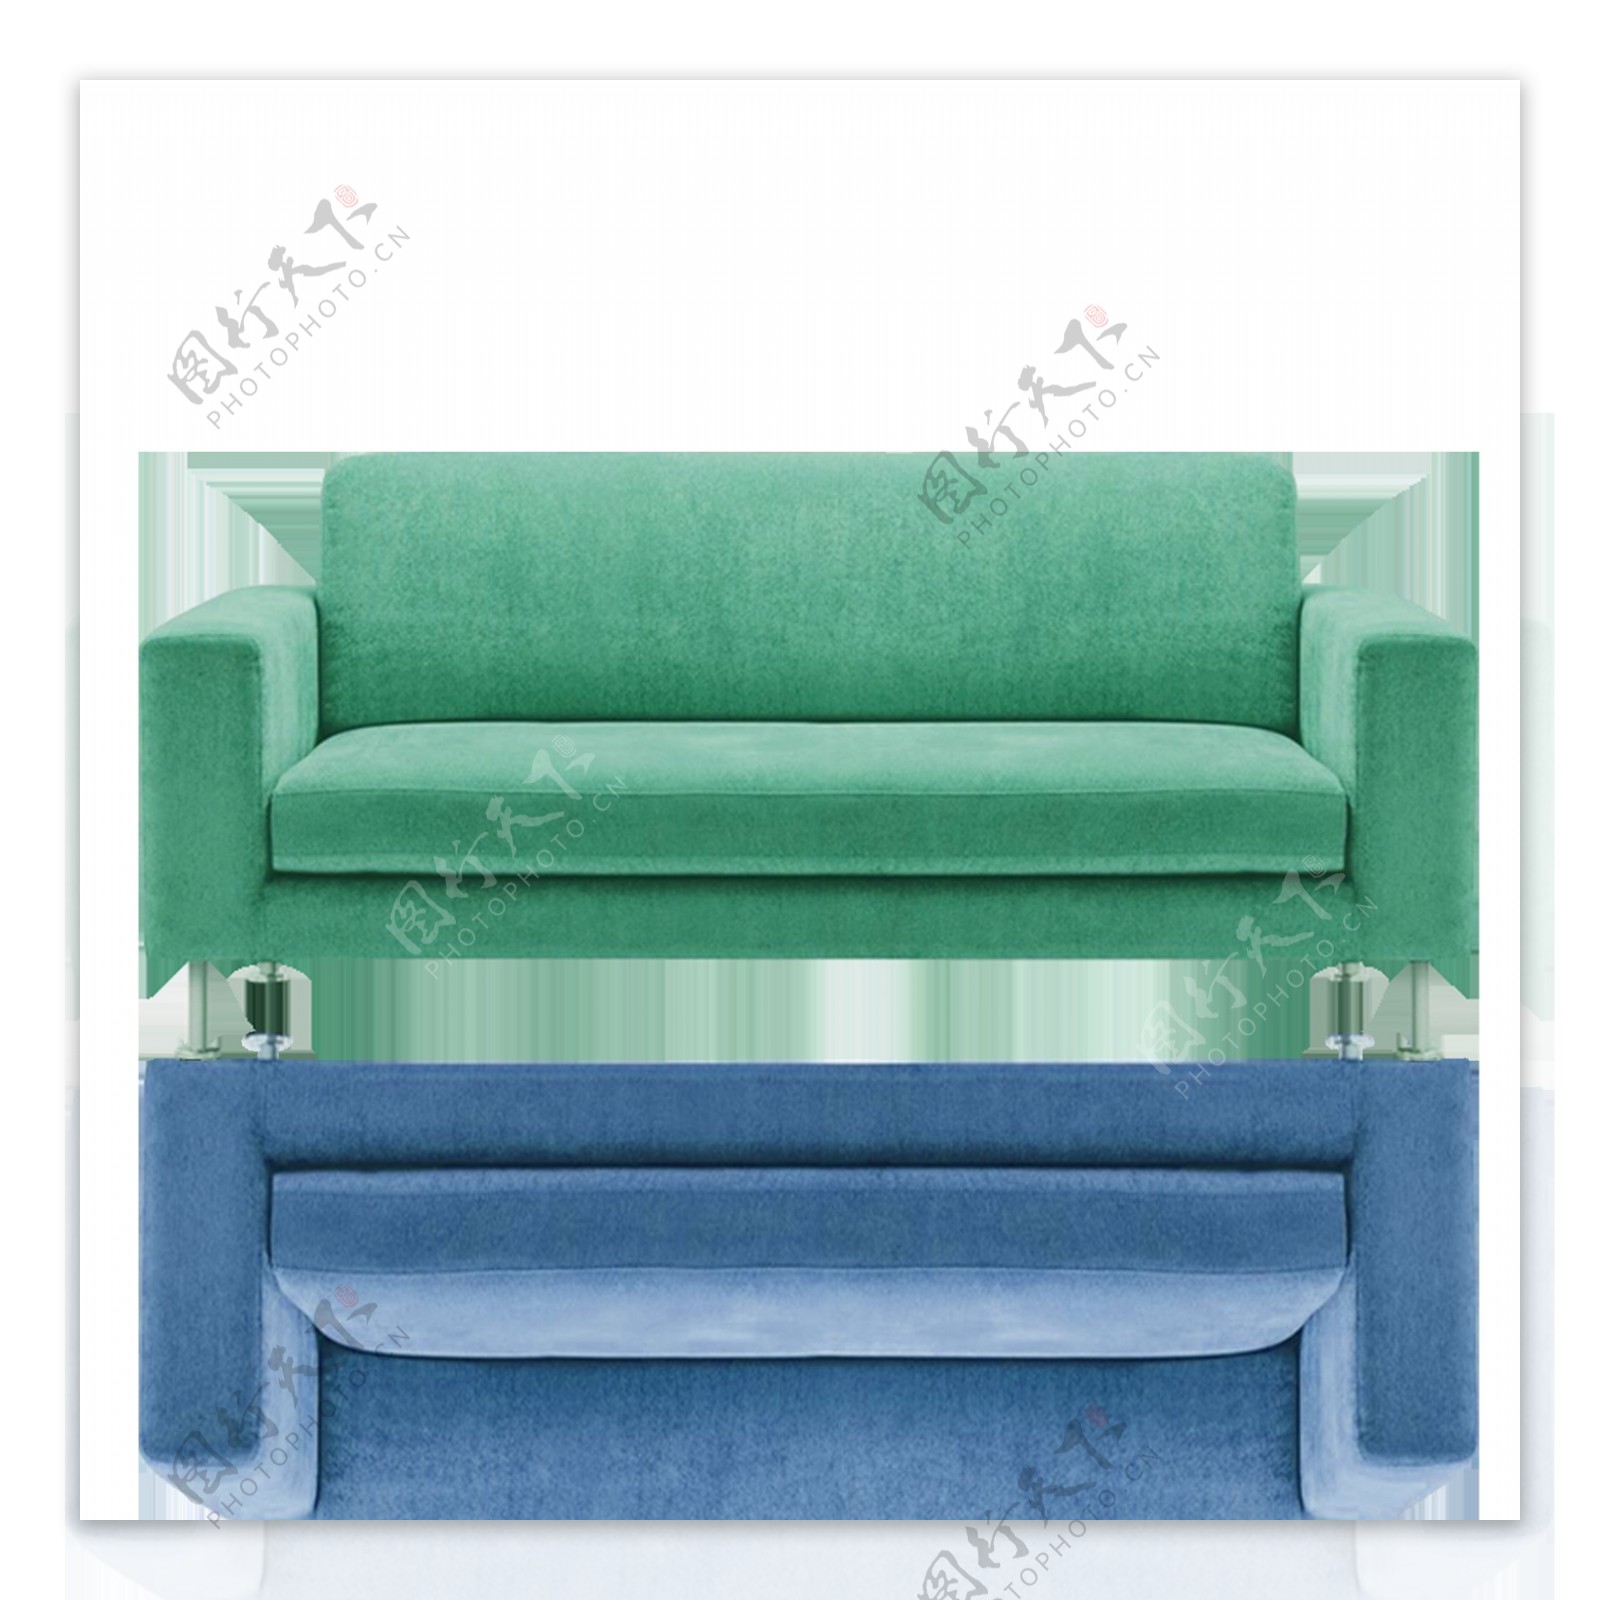 绿色沙发图片_装饰装修_建筑空间-图行天下素材网